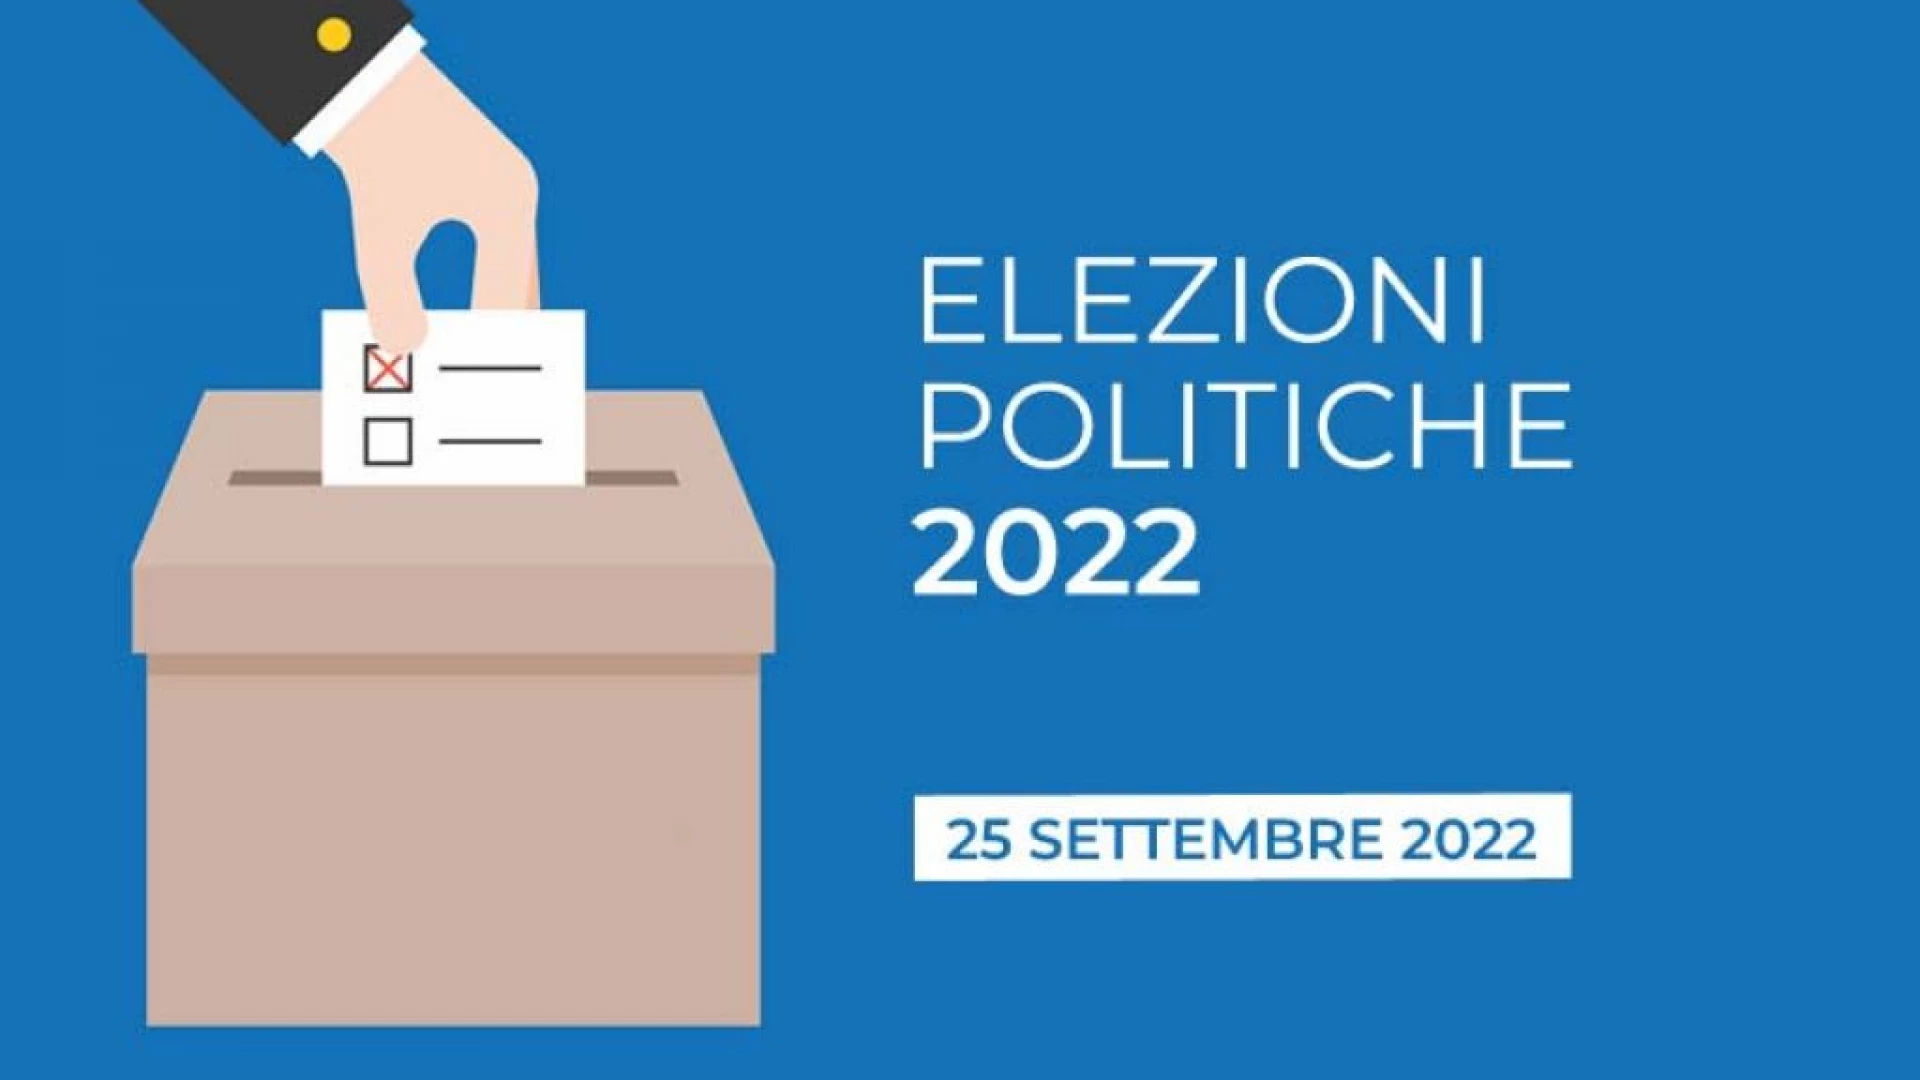 Elezioni politiche, fitto calendario di appuntamenti nel fine settimana per i candidati di Forza Italia.